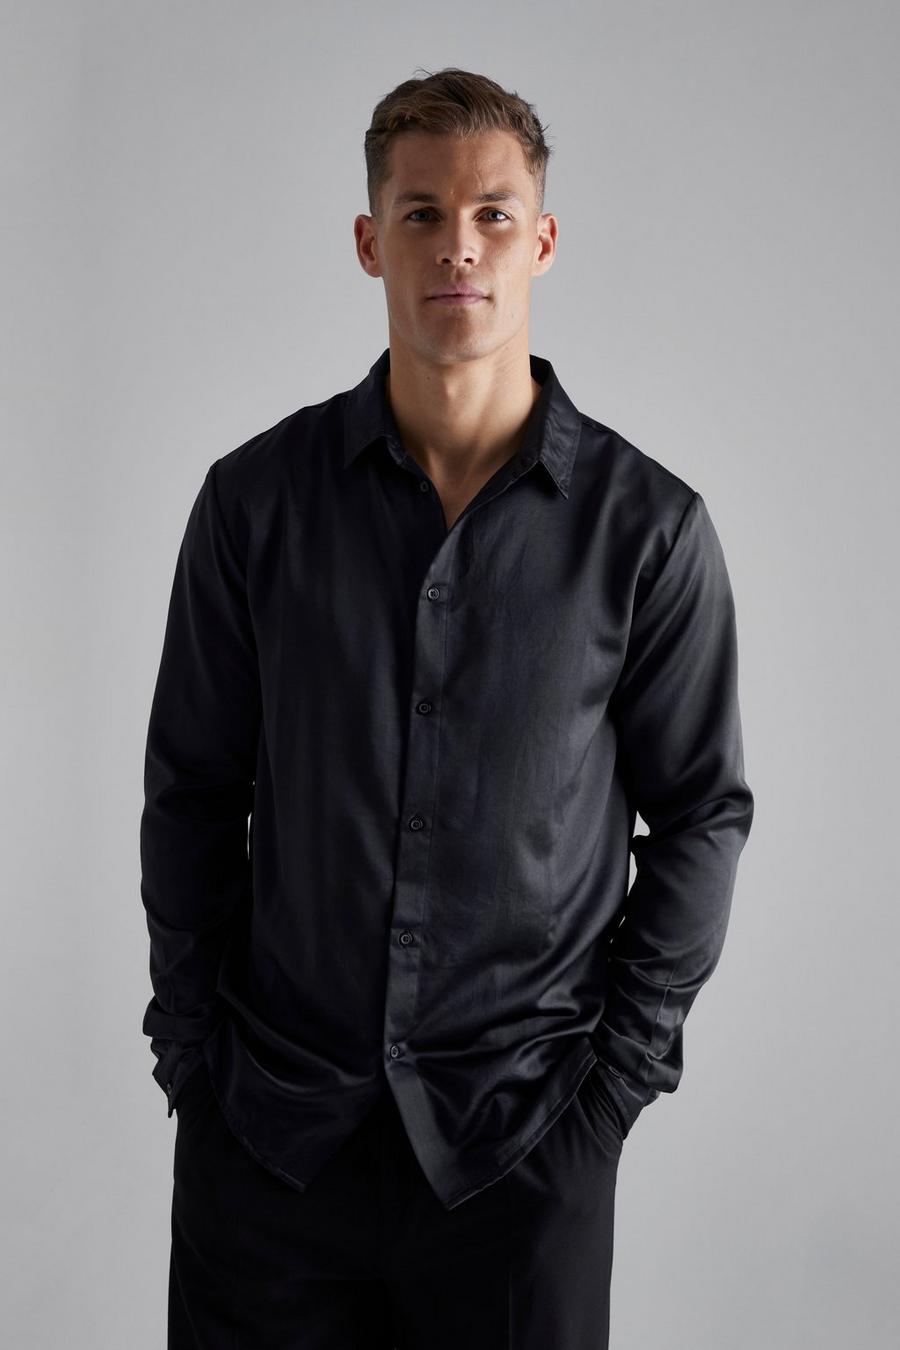 שחור nero חולצת סאטן עם שרוולים ארוכים, לגברים גבוהים